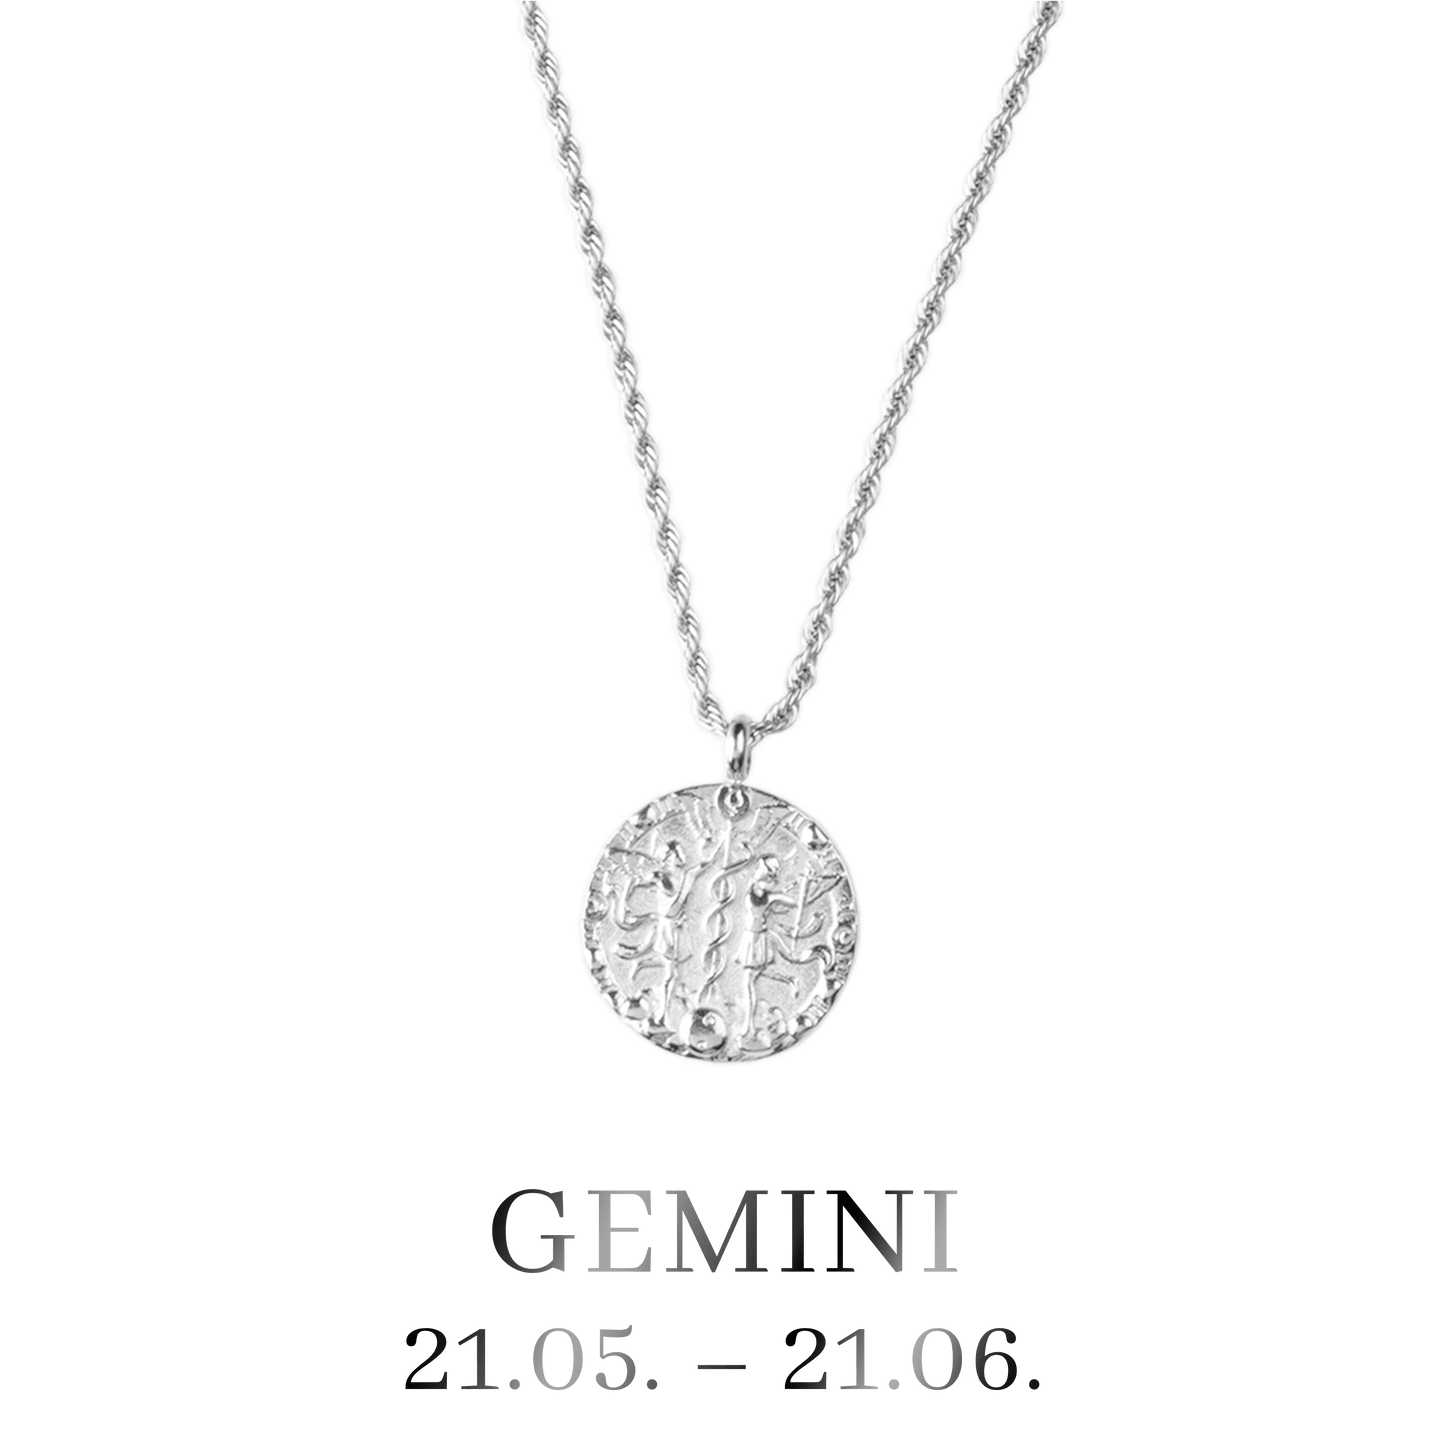 Gemini Necklace Silver